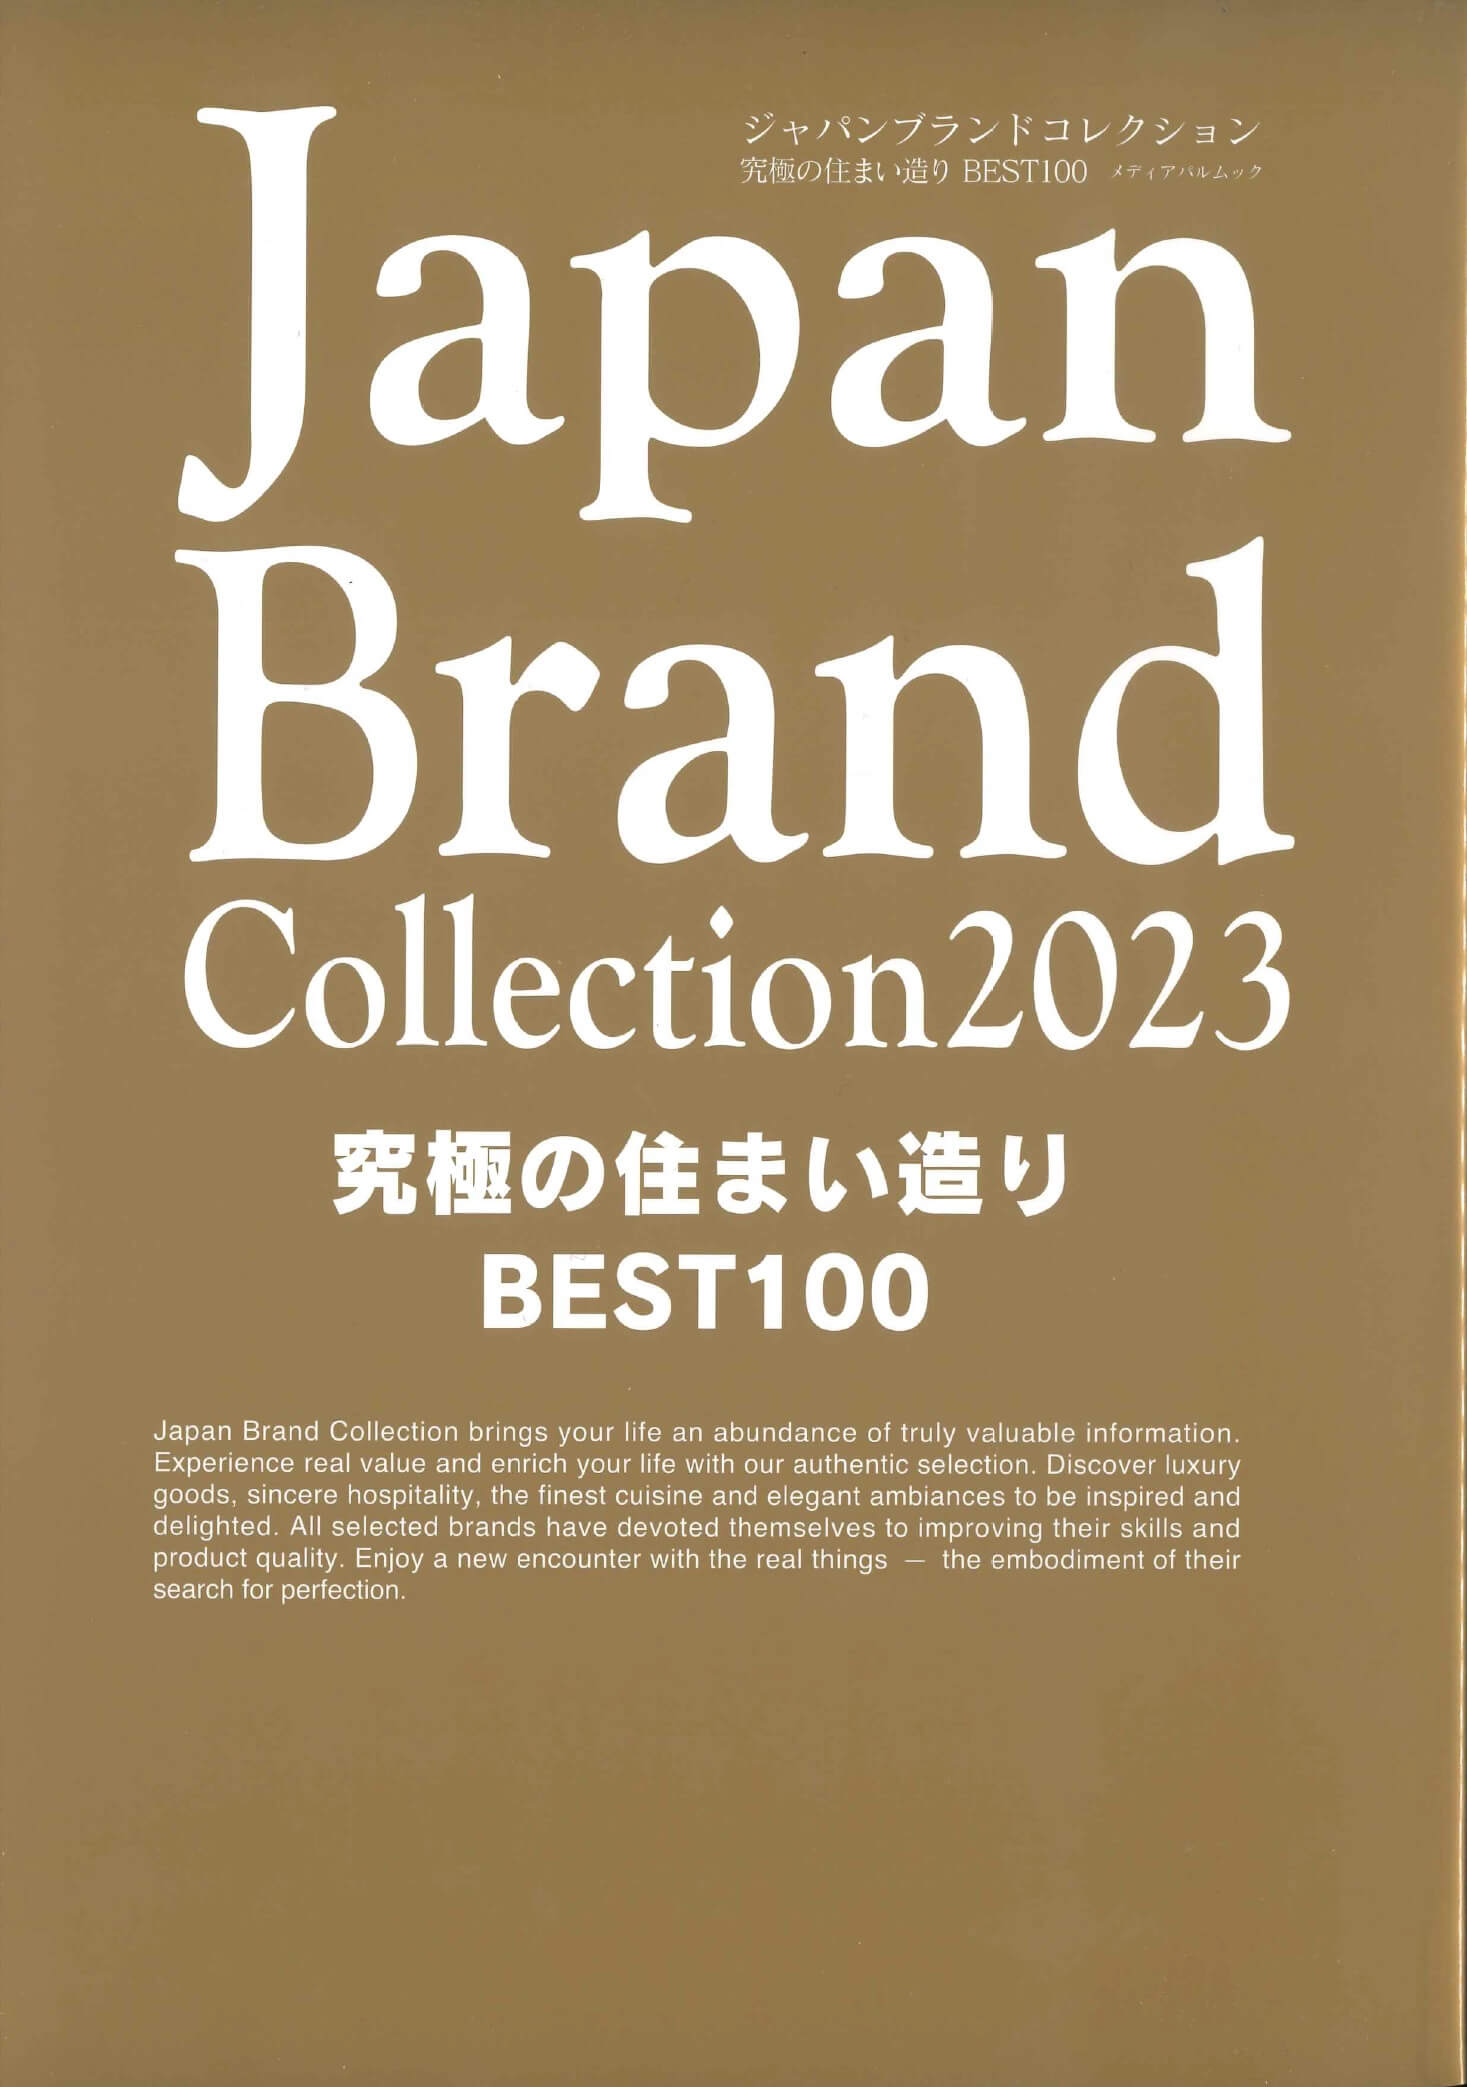 『Japan Brand Collection2023 究極の住まい造り BEST100』に掲載されました